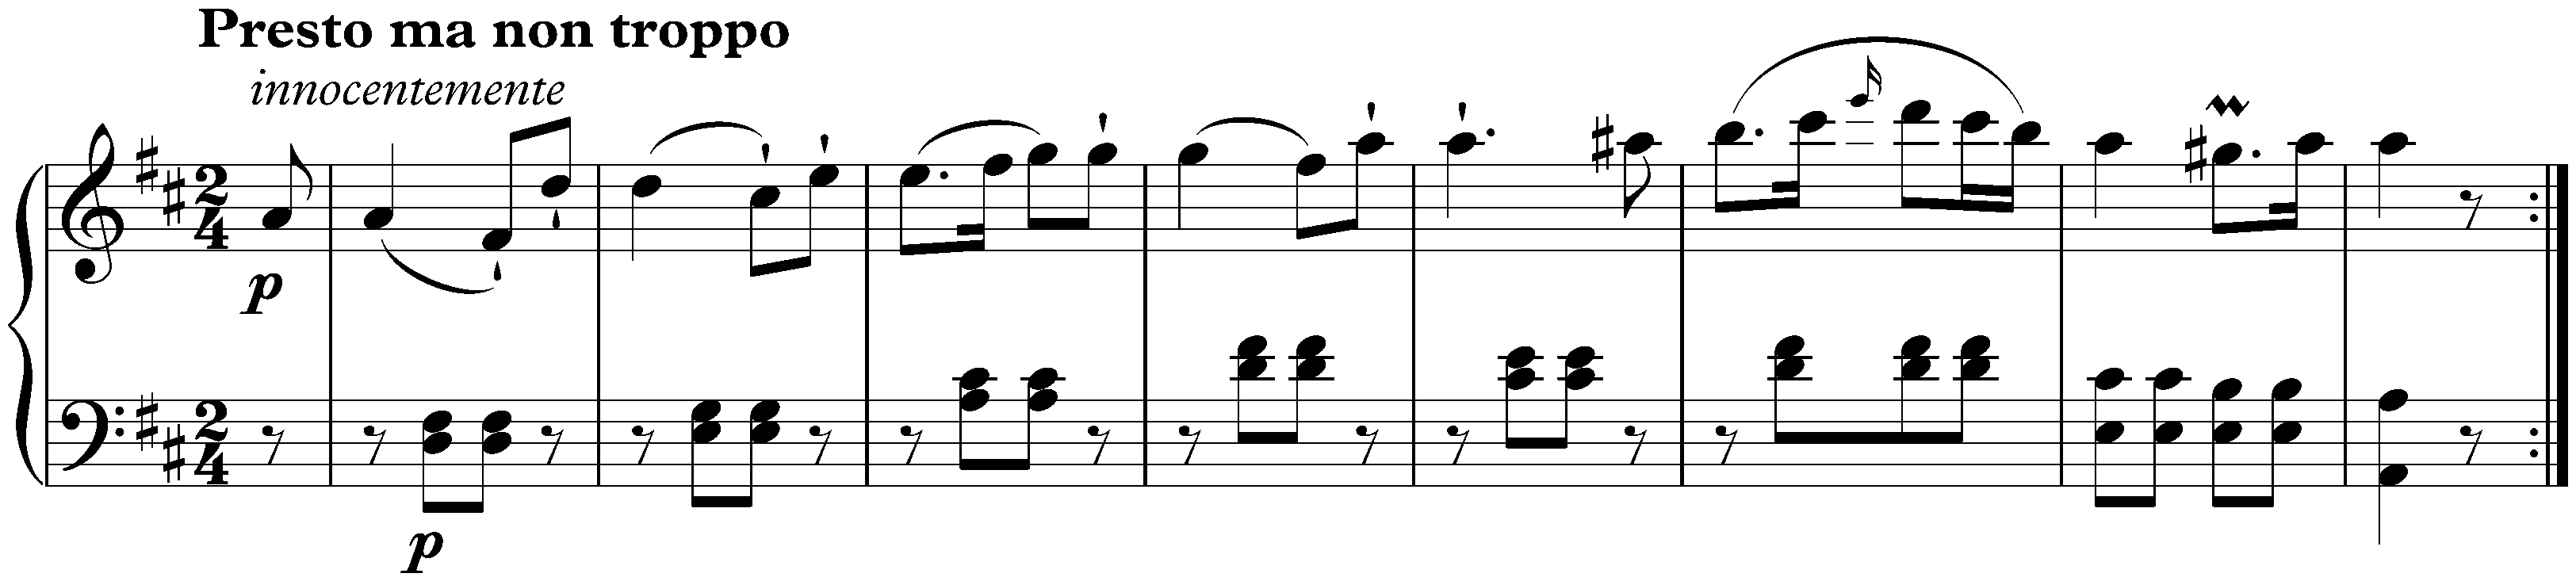 Sonata in D major, Hob. XVI:37; 3. Finale: Presto ma non troppo